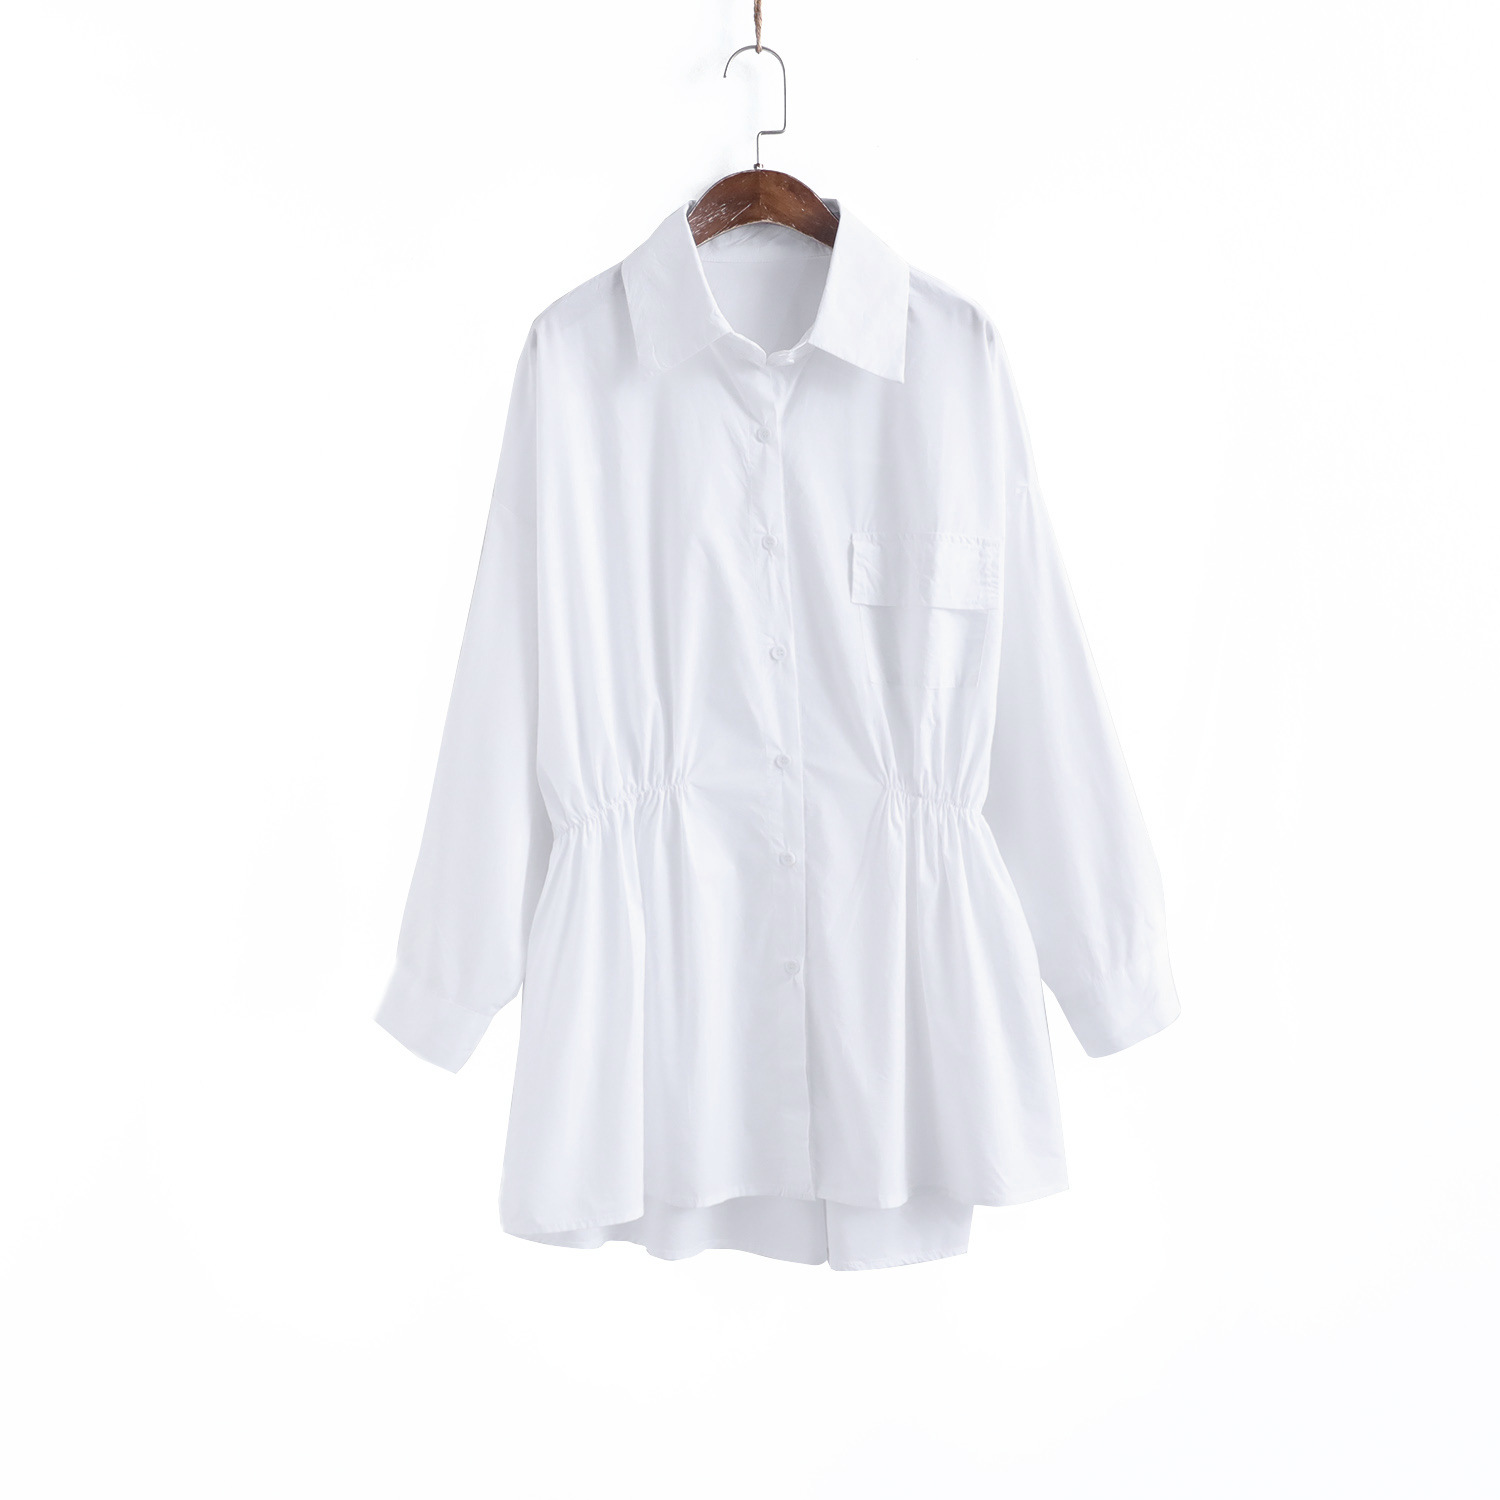 シャツ女のデザイン感ルーズストレッチウエストシャツ女春先タイプ薄手トップス110141